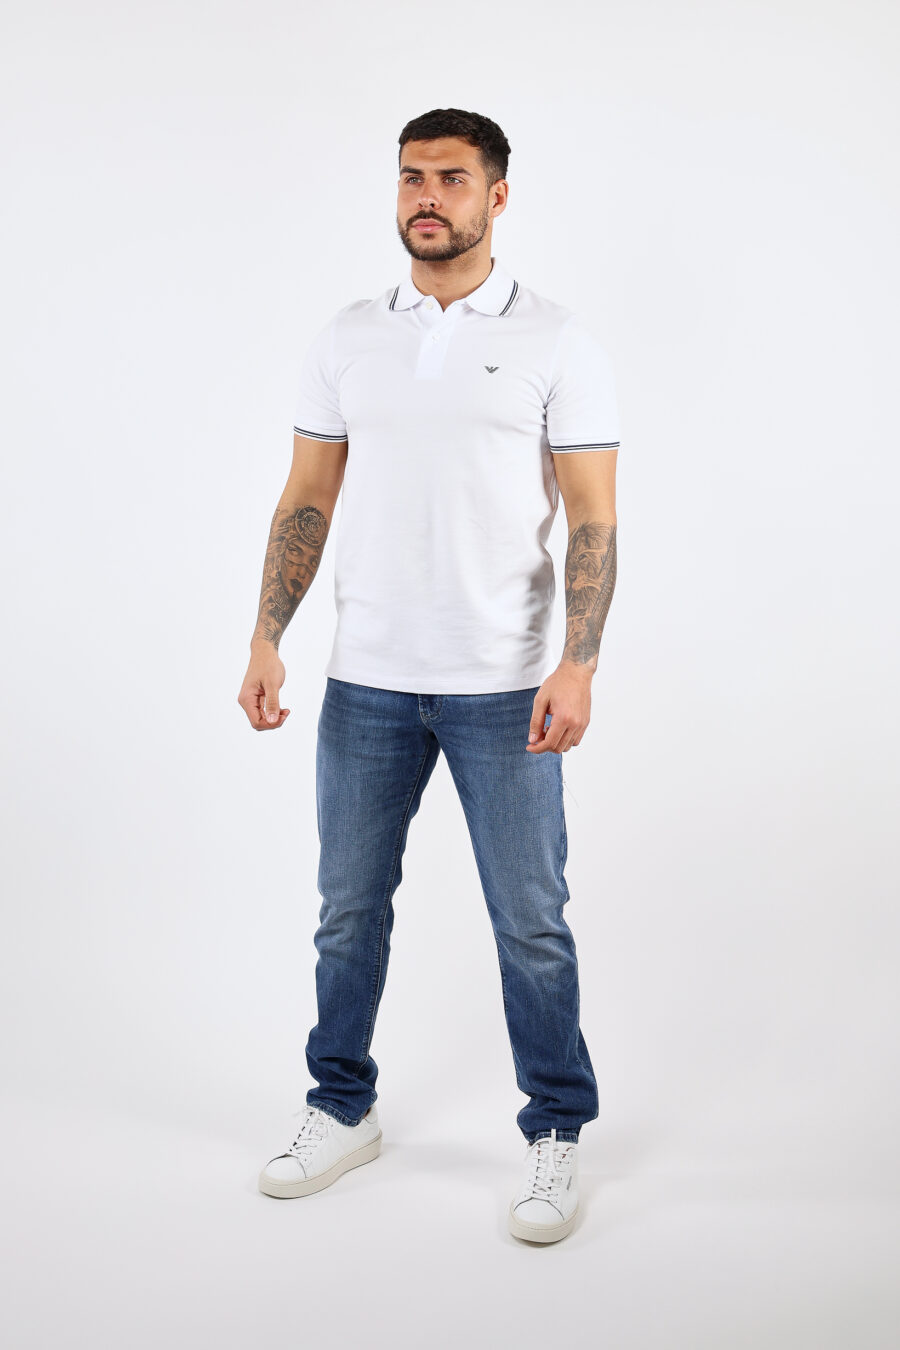 Weißes gestricktes Poloshirt mit gestreiftem Kragen und Mini-Adler-Logo - BLS Fashion 2